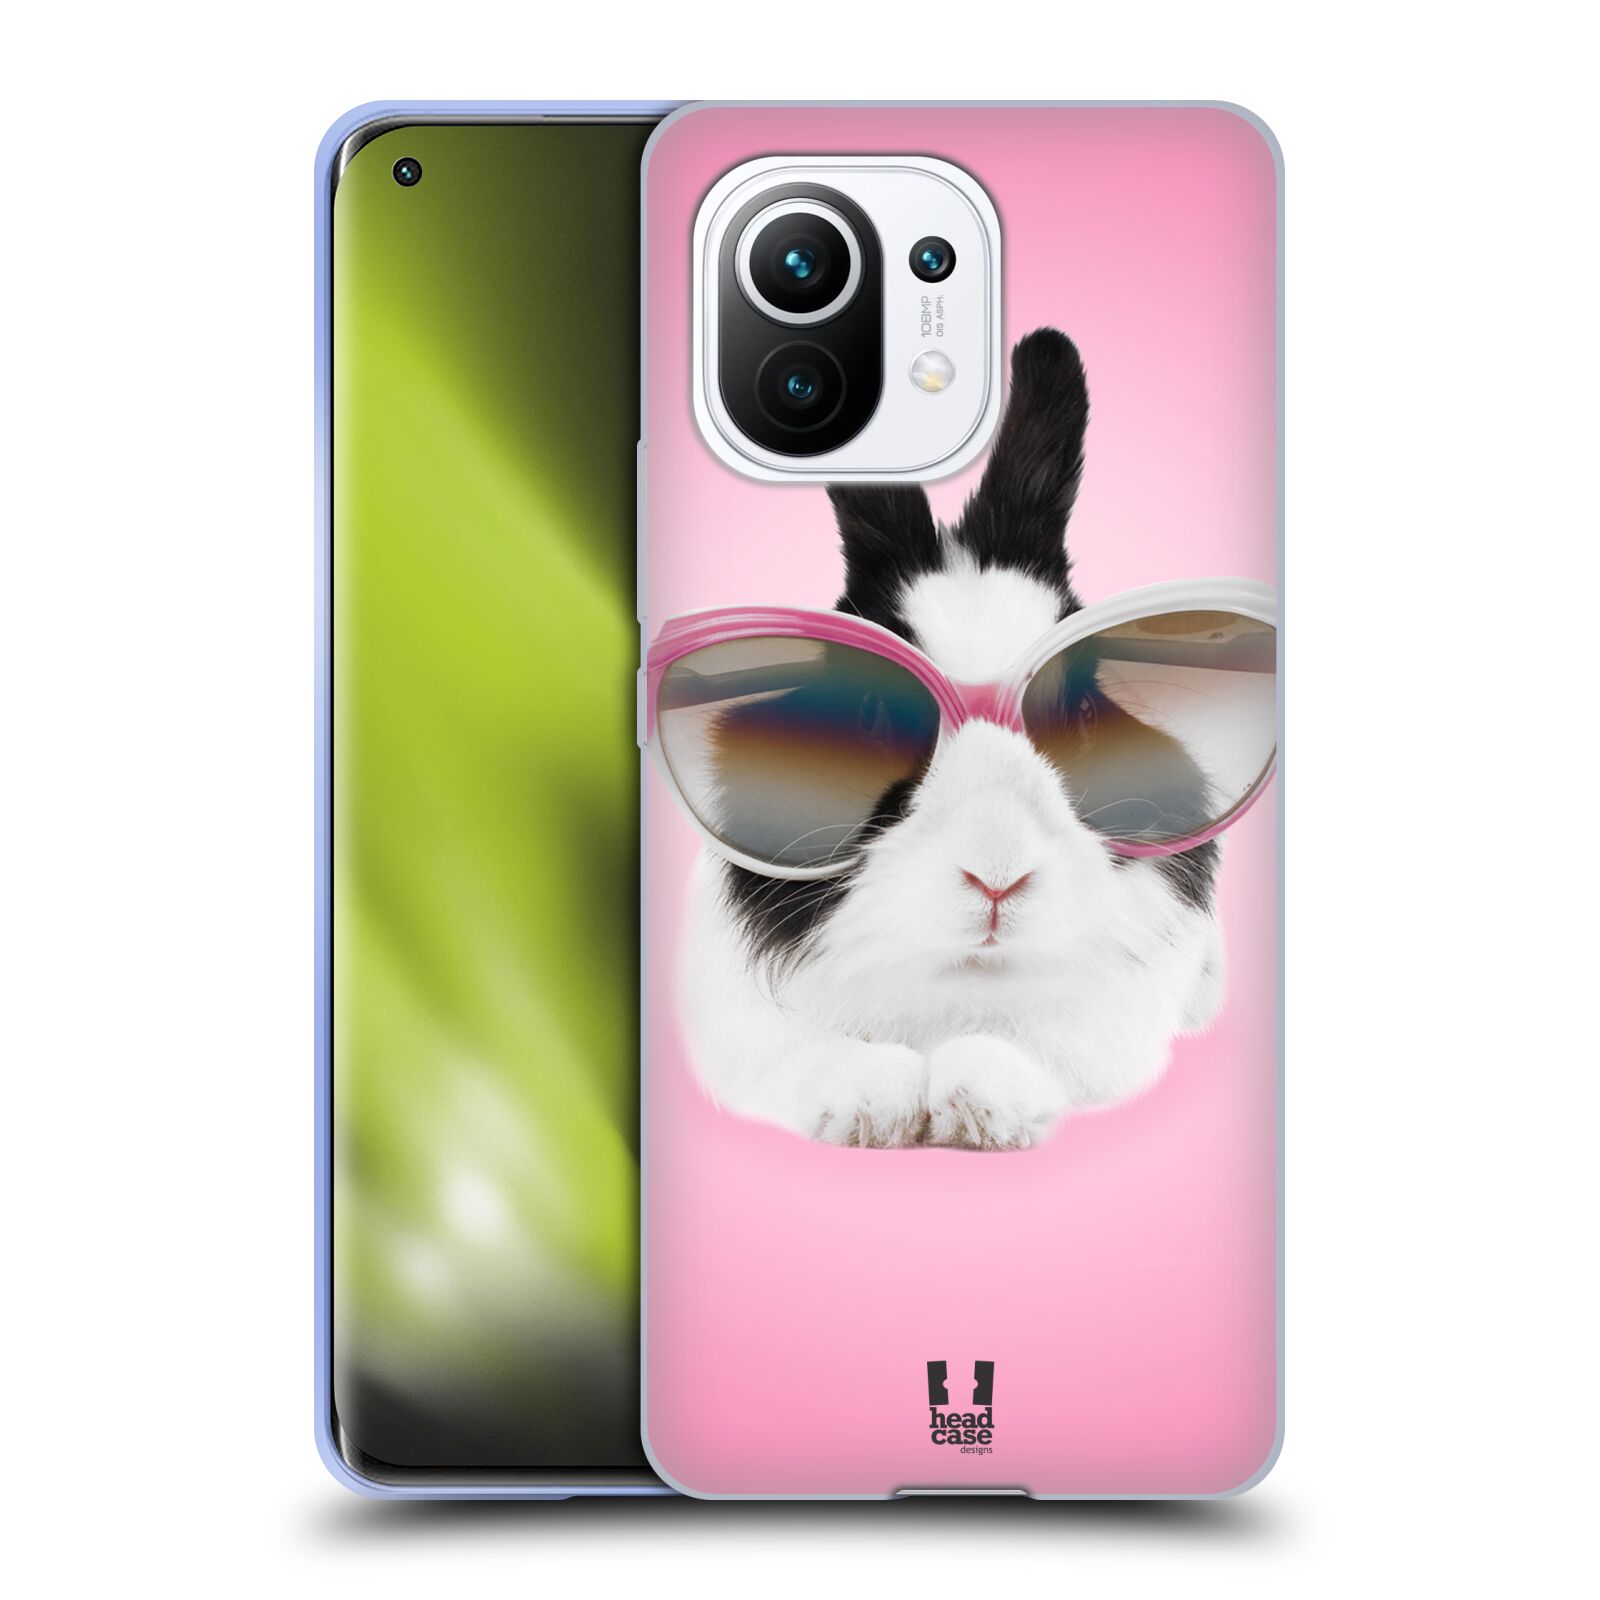 Plastový obal HEAD CASE na mobil Xiaomi Mi 11 vzor Legrační zvířátka roztomilý králíček s brýlemi růžová